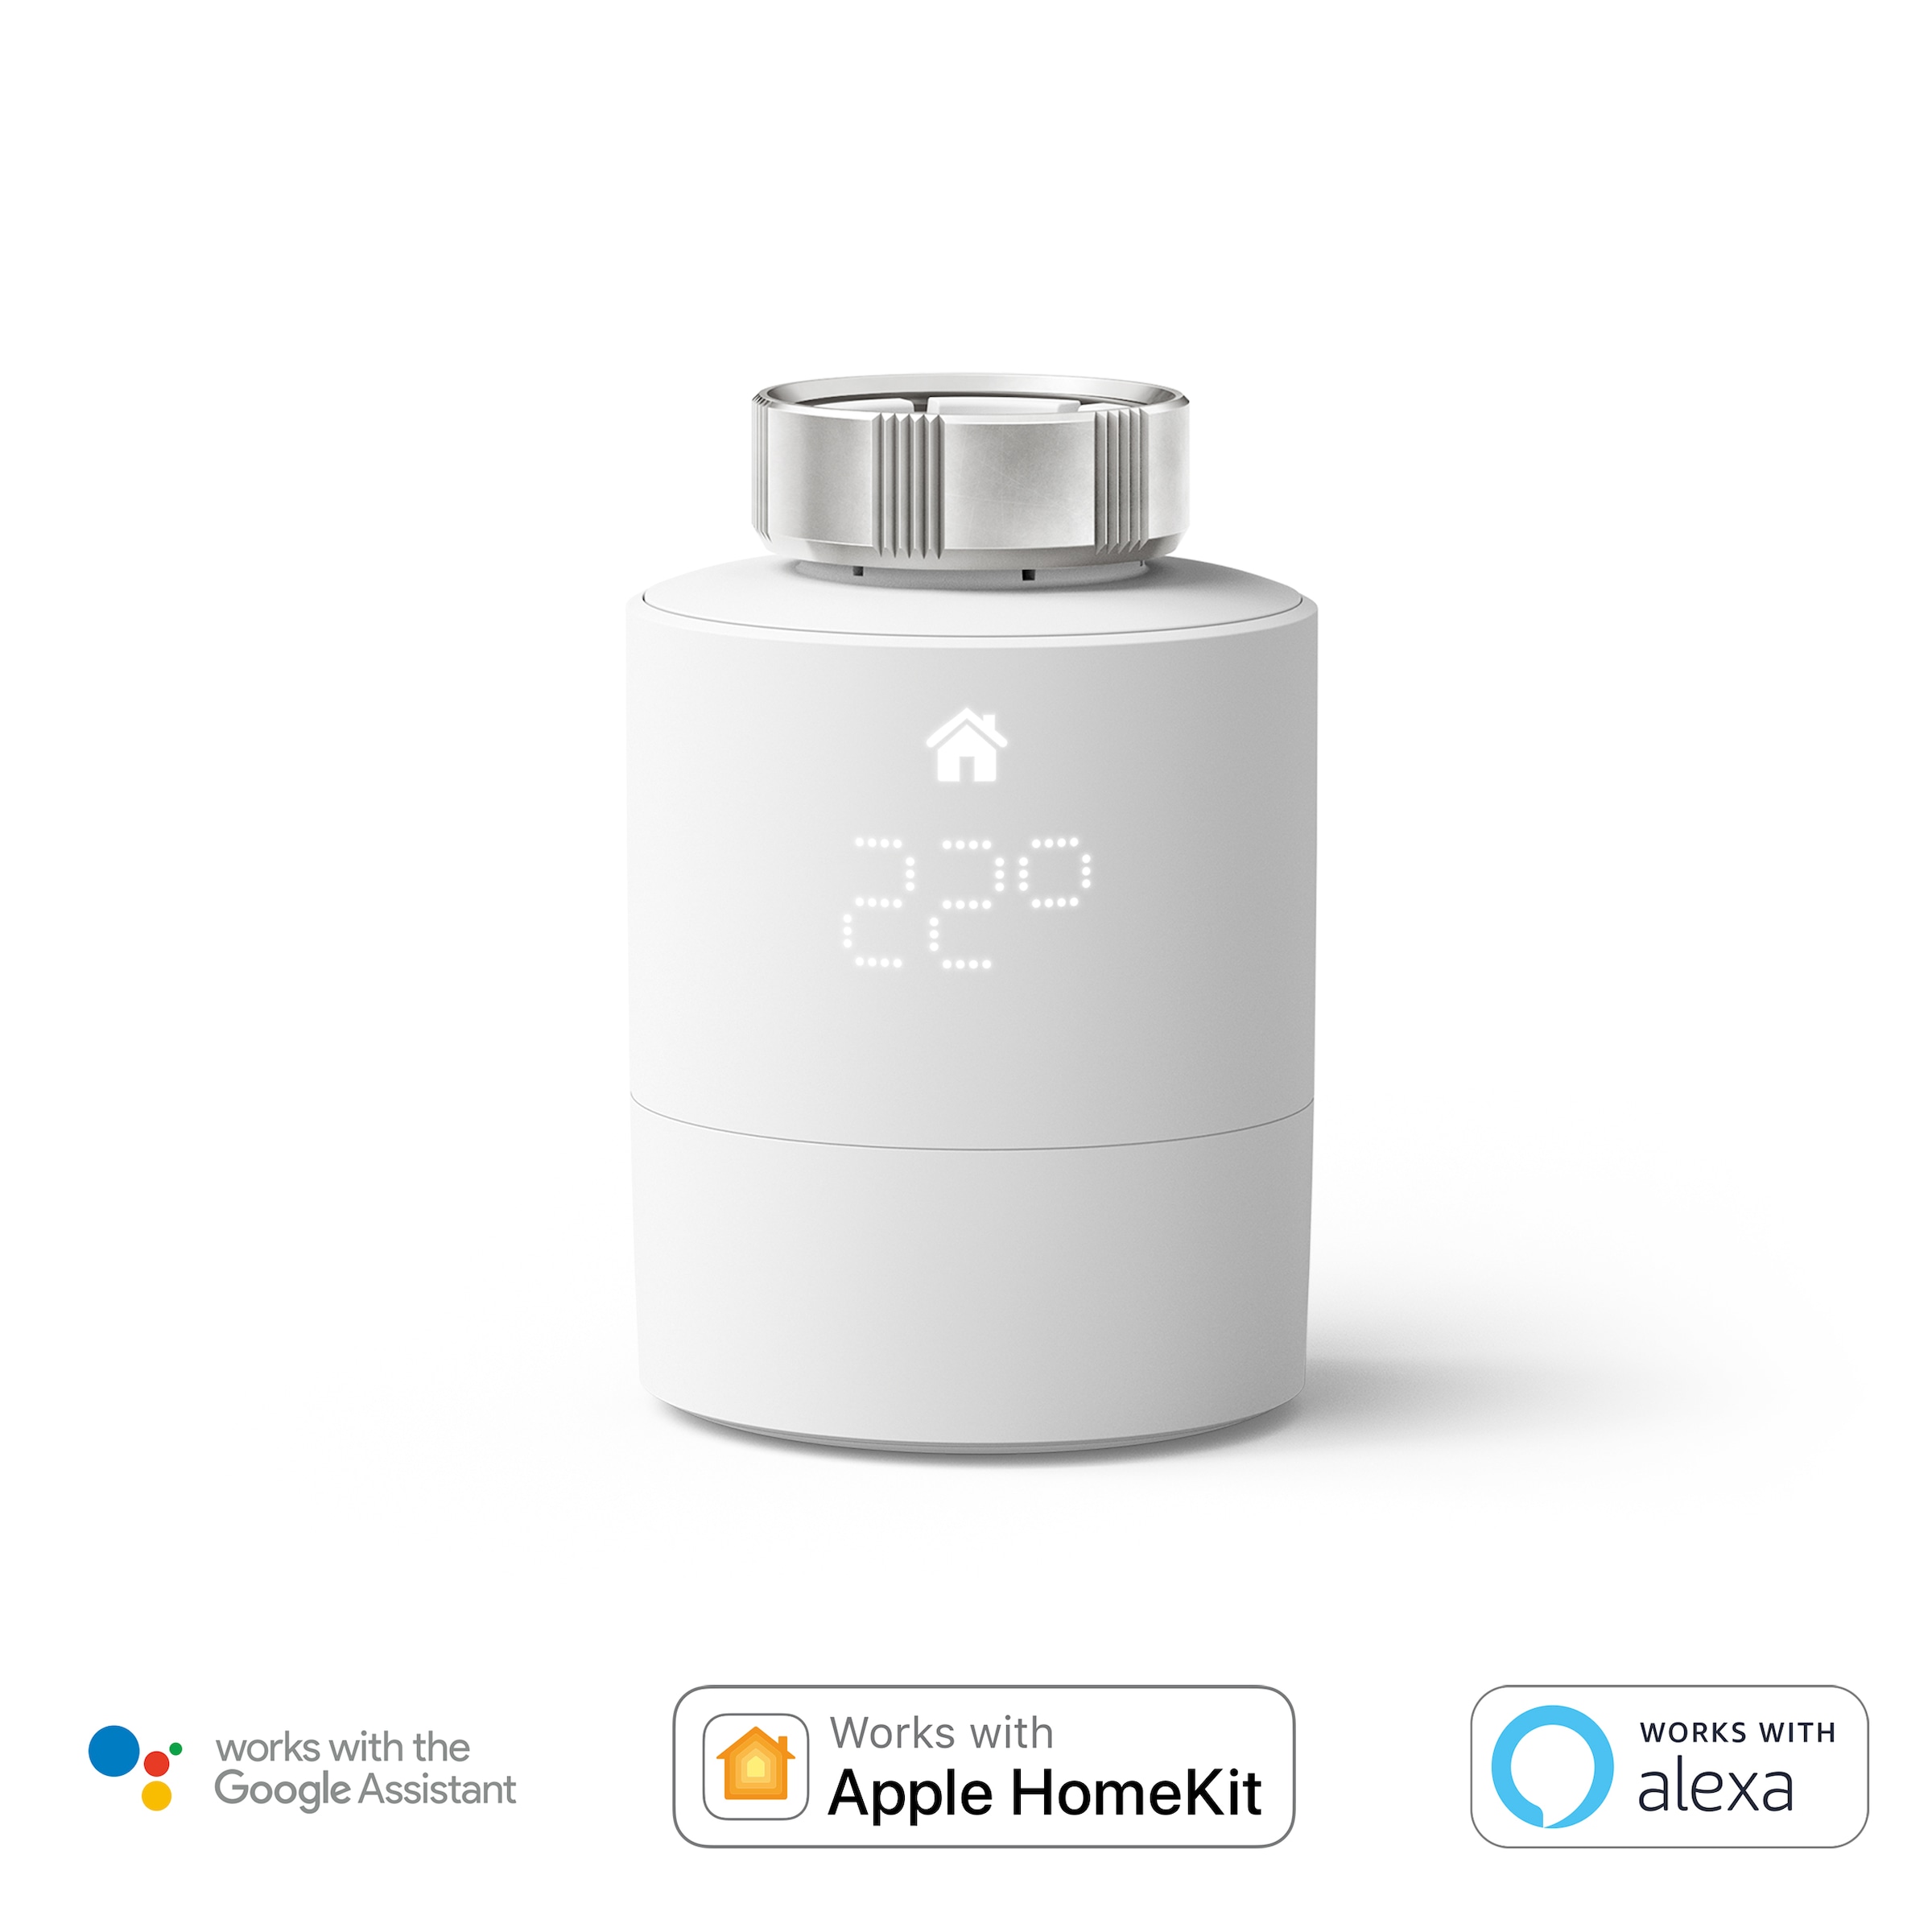 Tado Heizkörperthermostat »Smartes Heizkörper-Thermostat - Zusatzprodukt zur Einzelraumsteuerung«